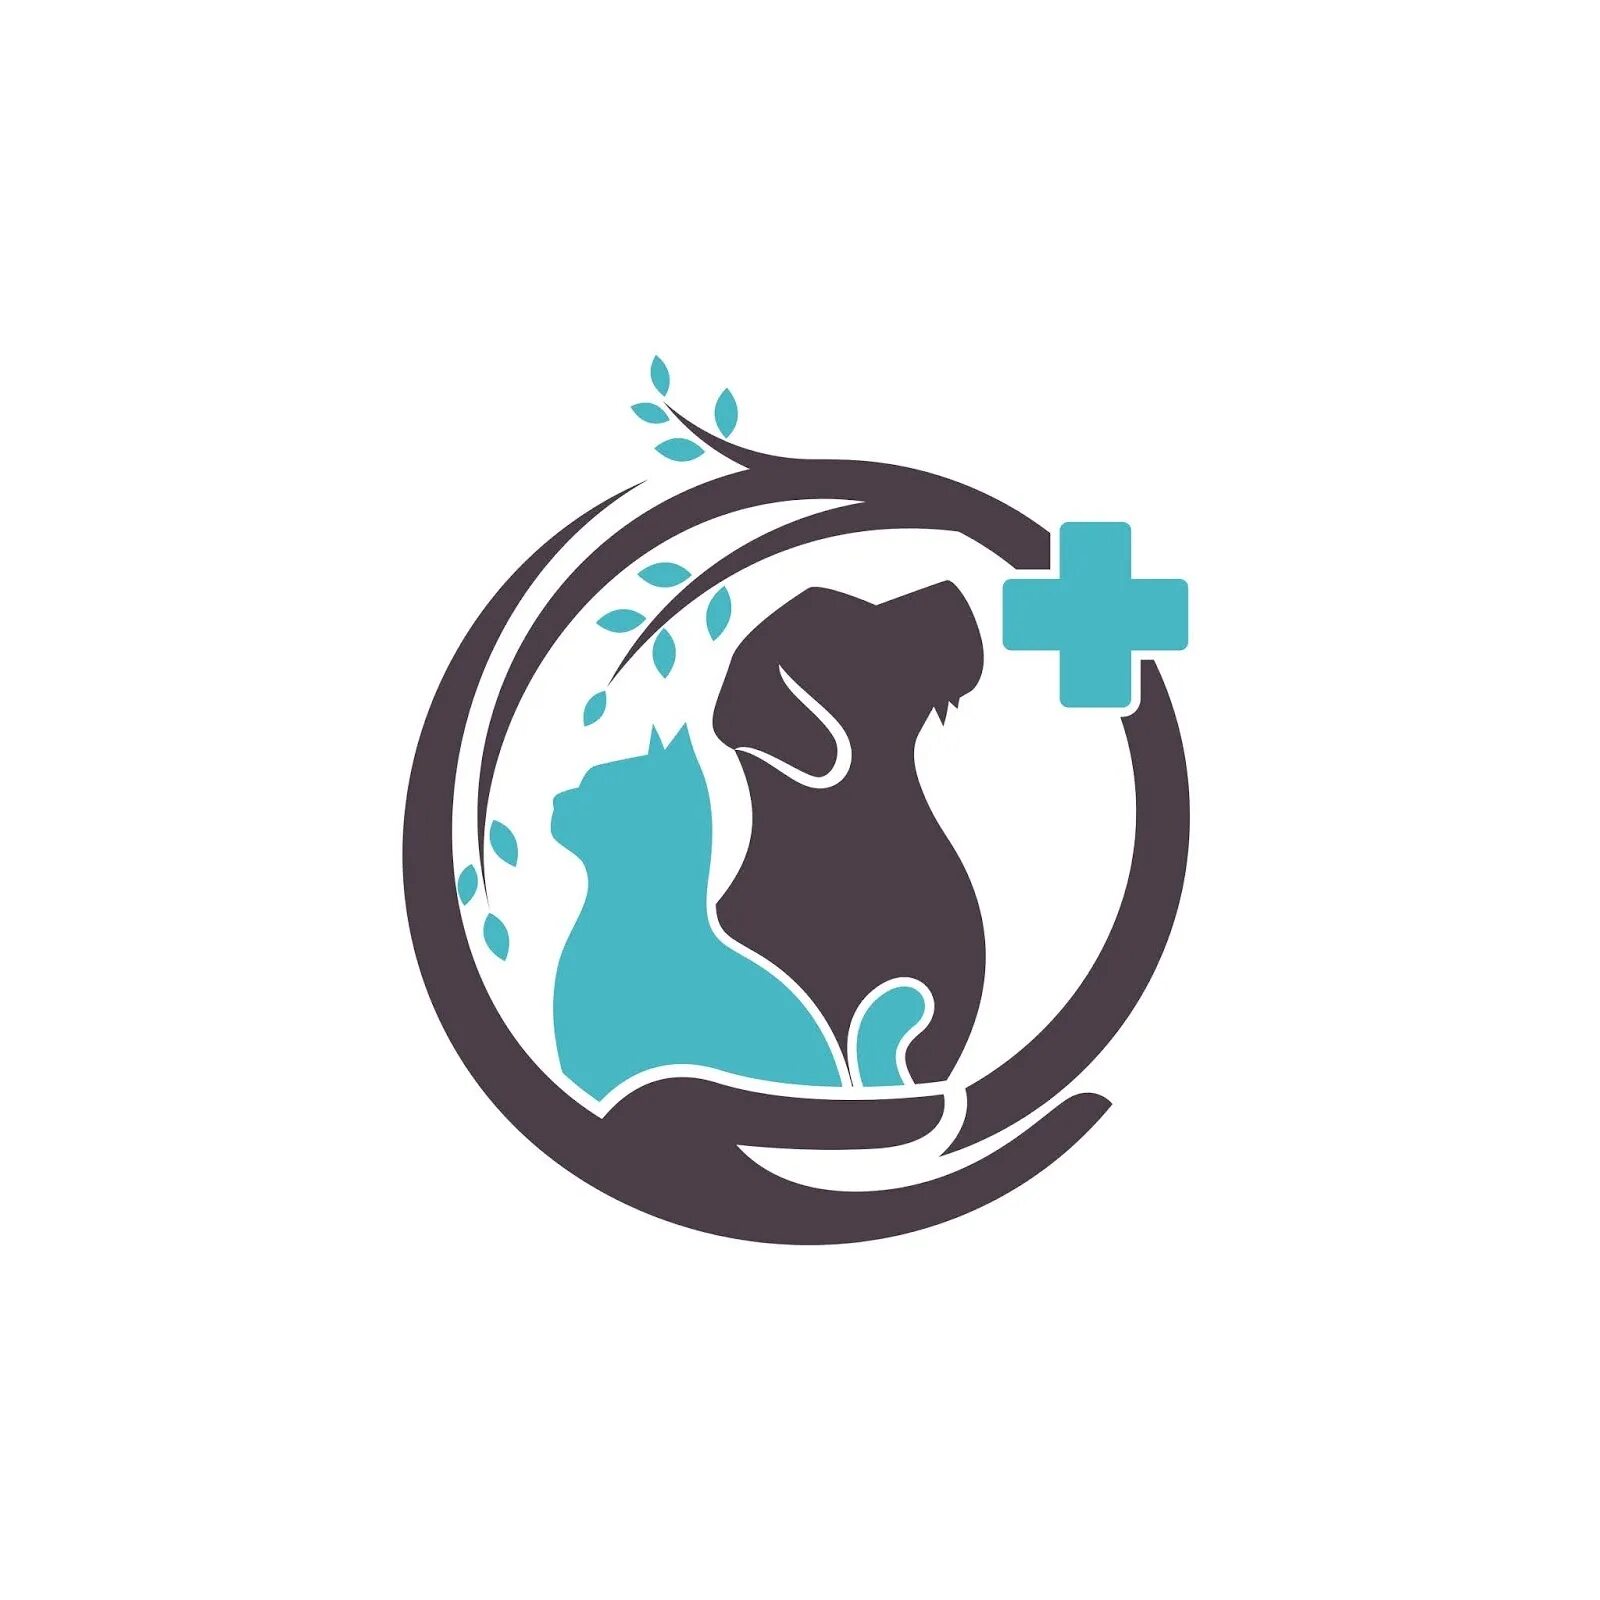 Вет кэт. Эмблема ветеринара. Логотип ветклиники. Значок ветеринарной клиники. Ветеринарная клиника лого.